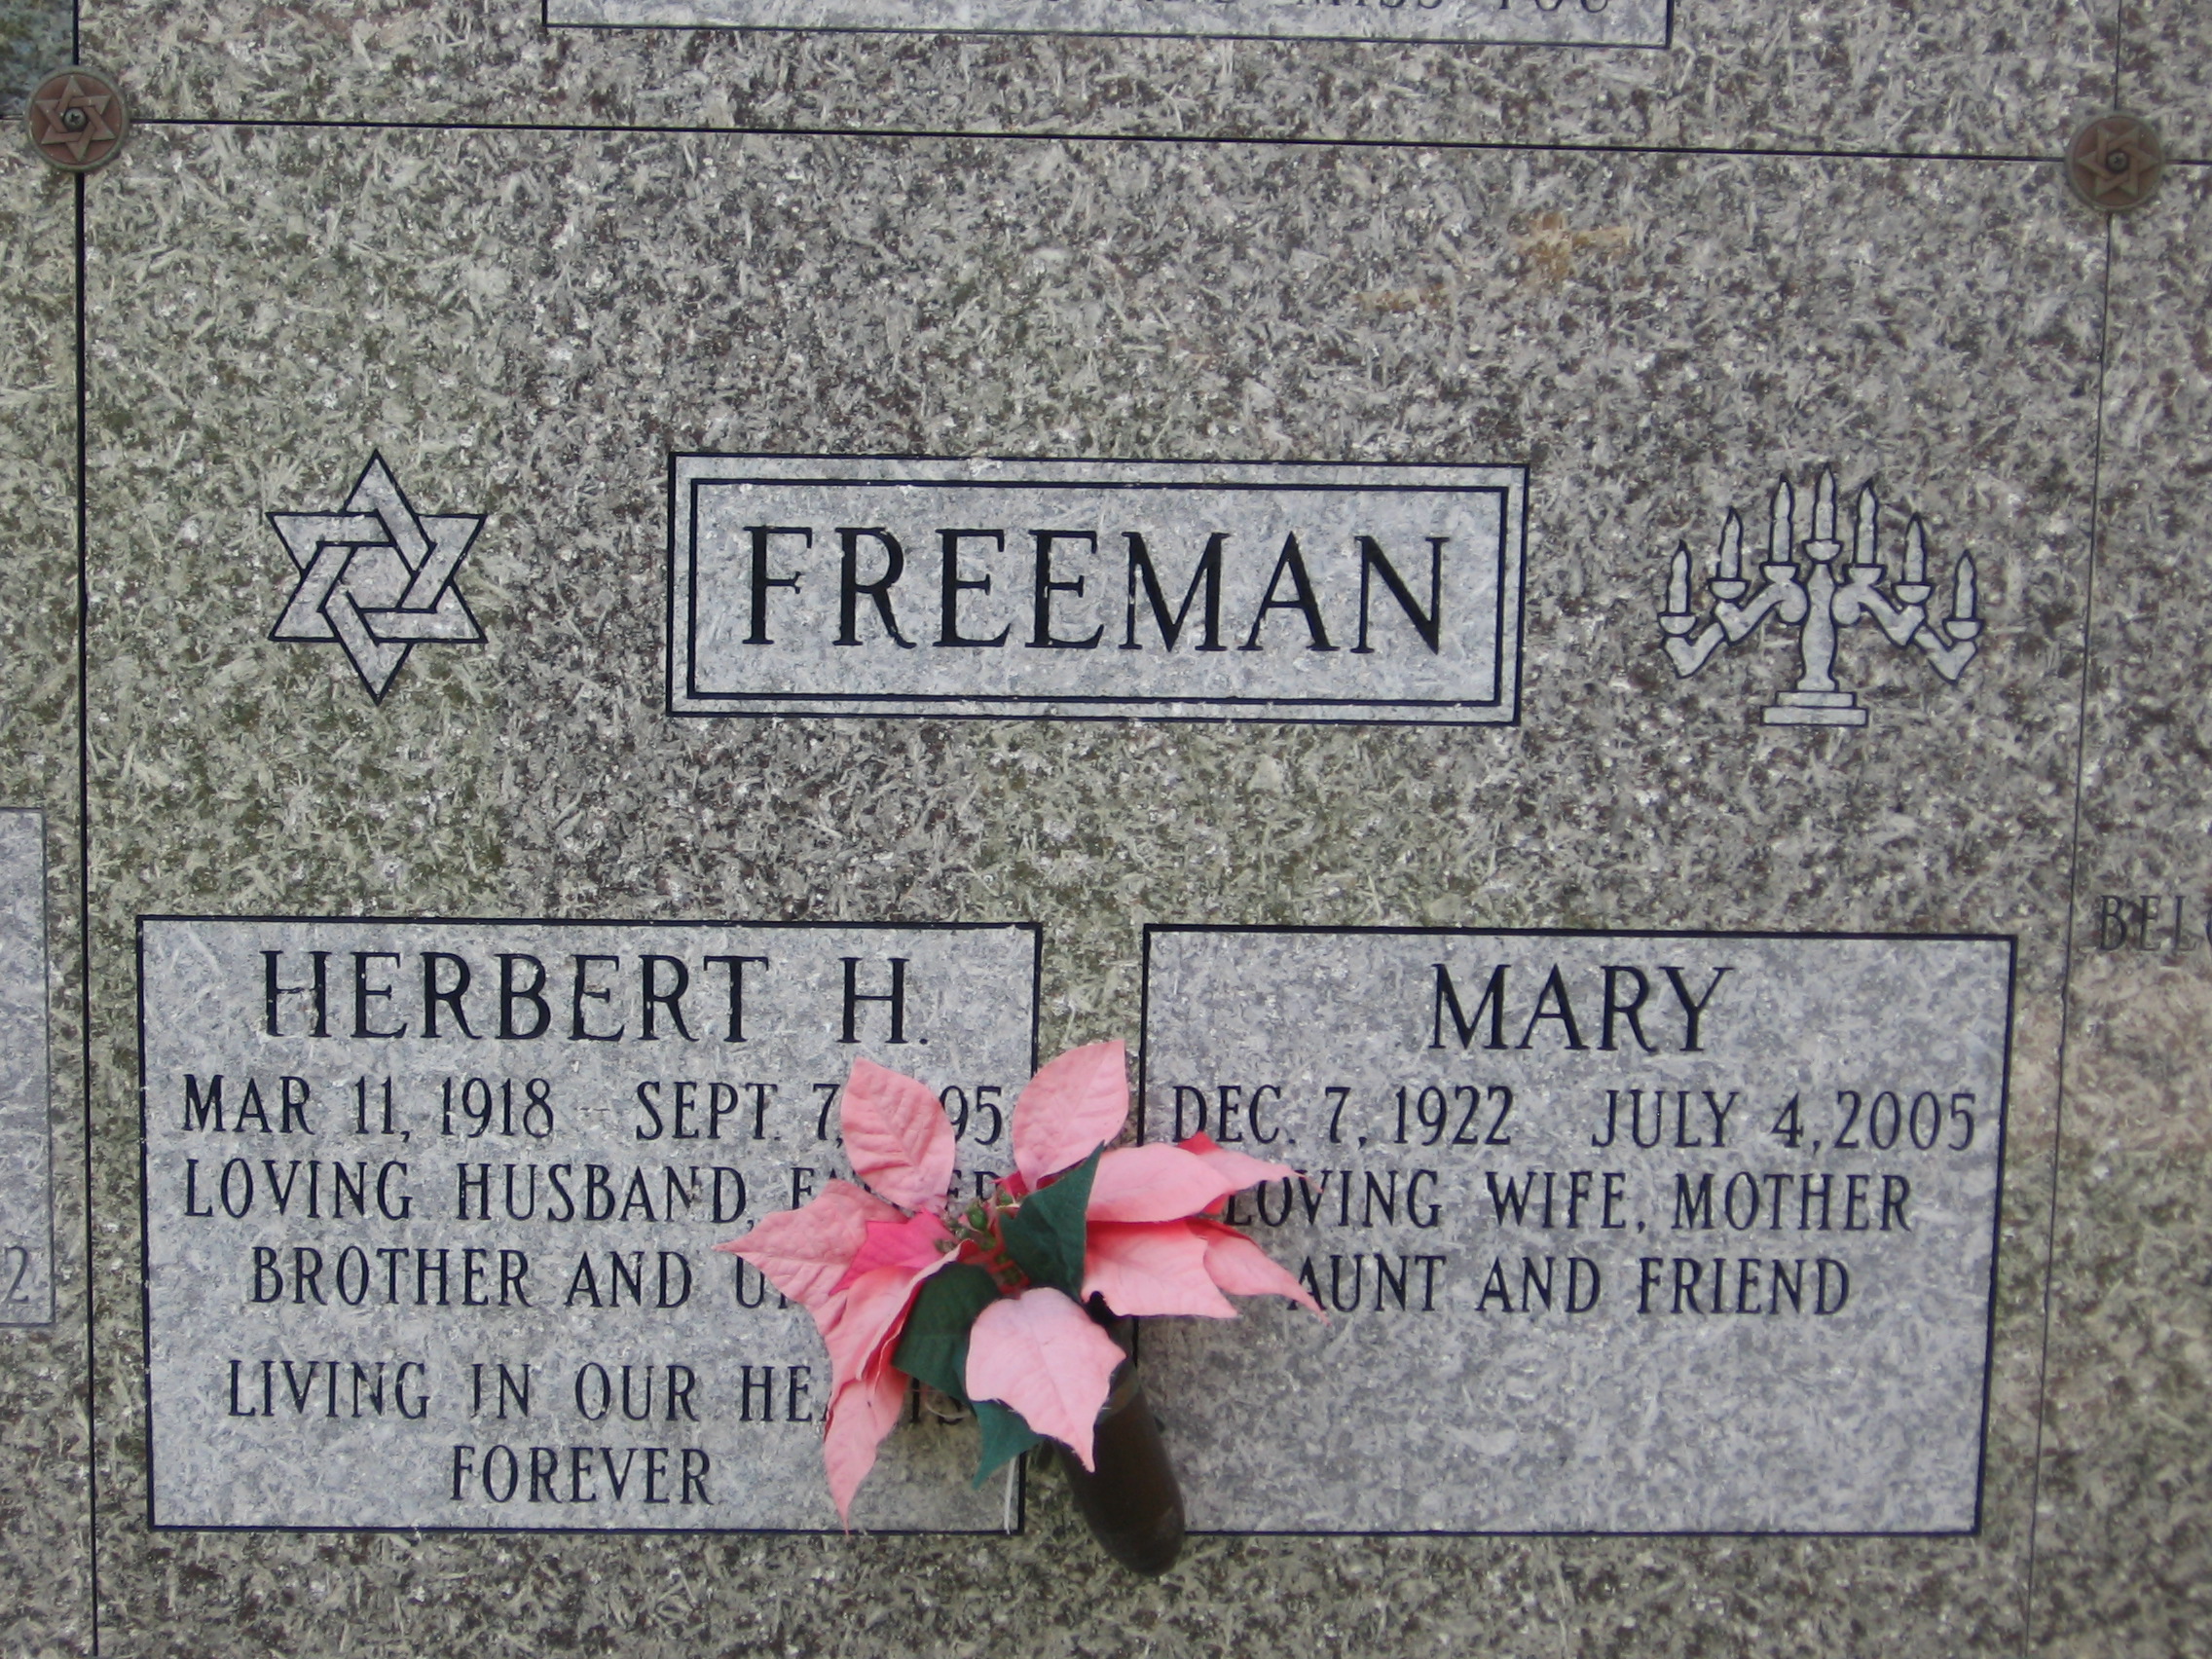 Mary Freeman